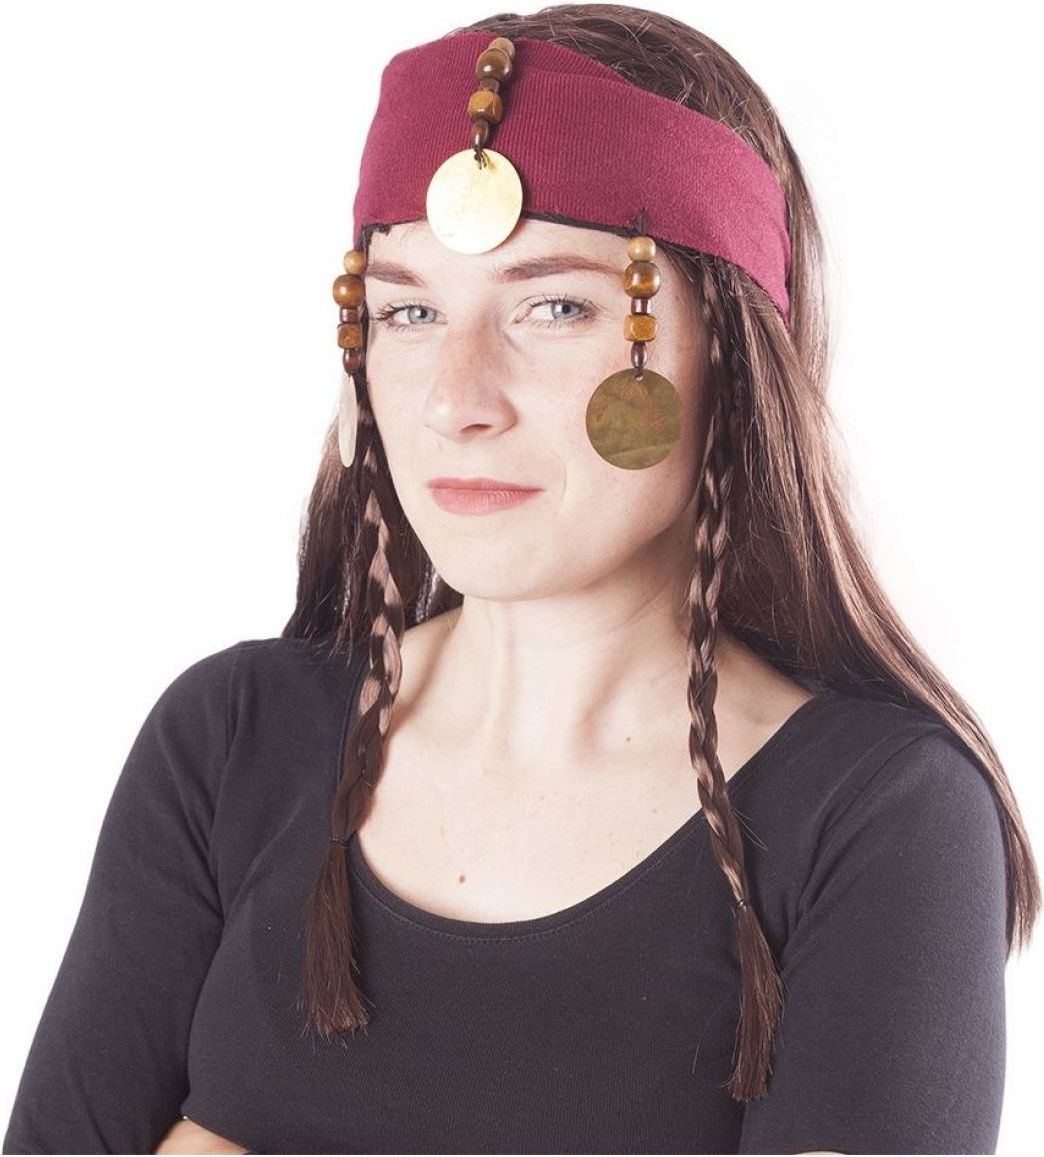 Rappa Paruka pirátská s vlasy - obrázek 1